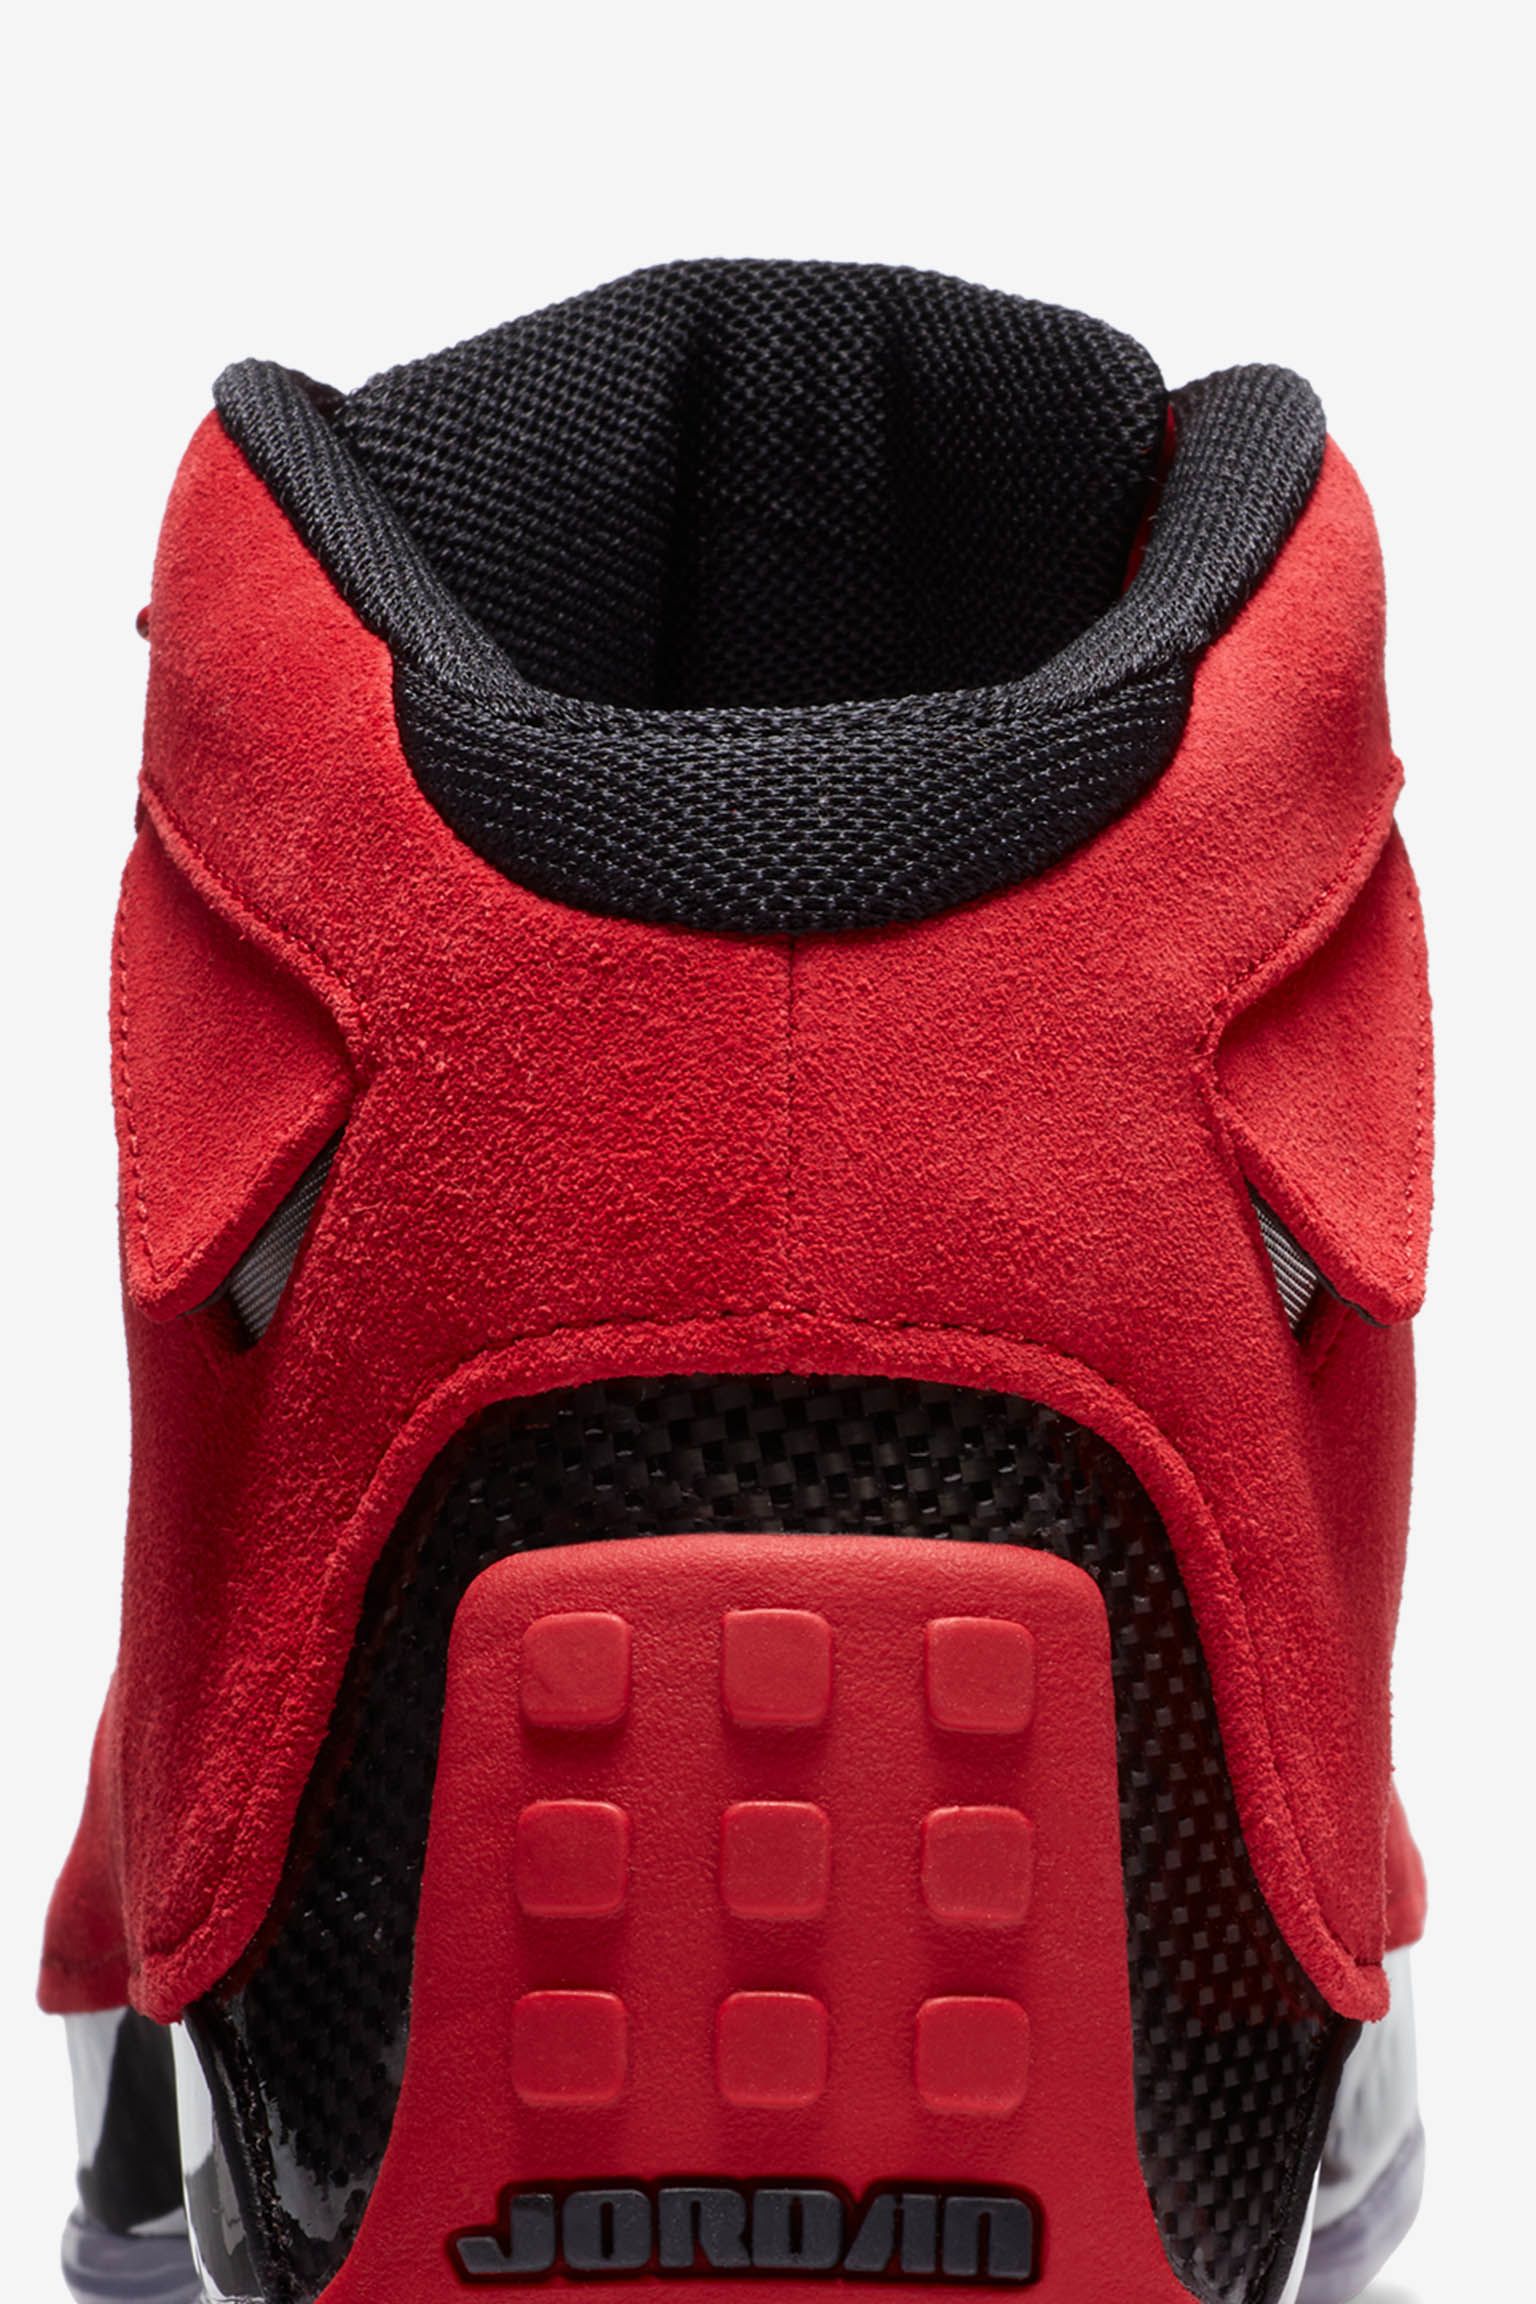 Fecha de lanzamiento de las Air Jordan 18 "Gym Red &amp; Black". Nike SNKRS